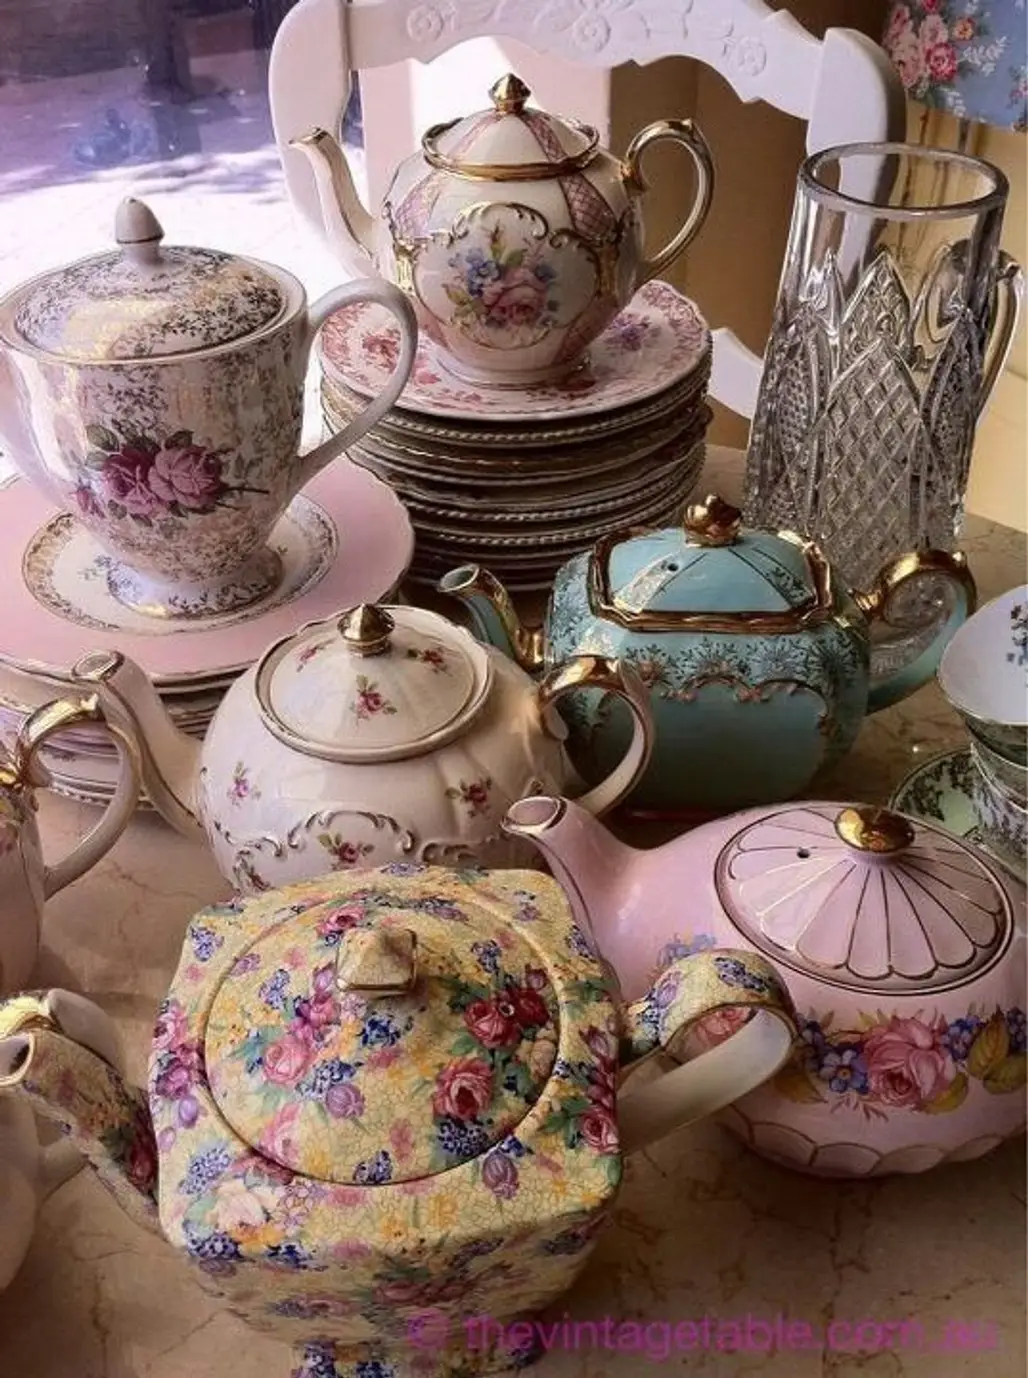 How Many High Tea Pots do You Need?